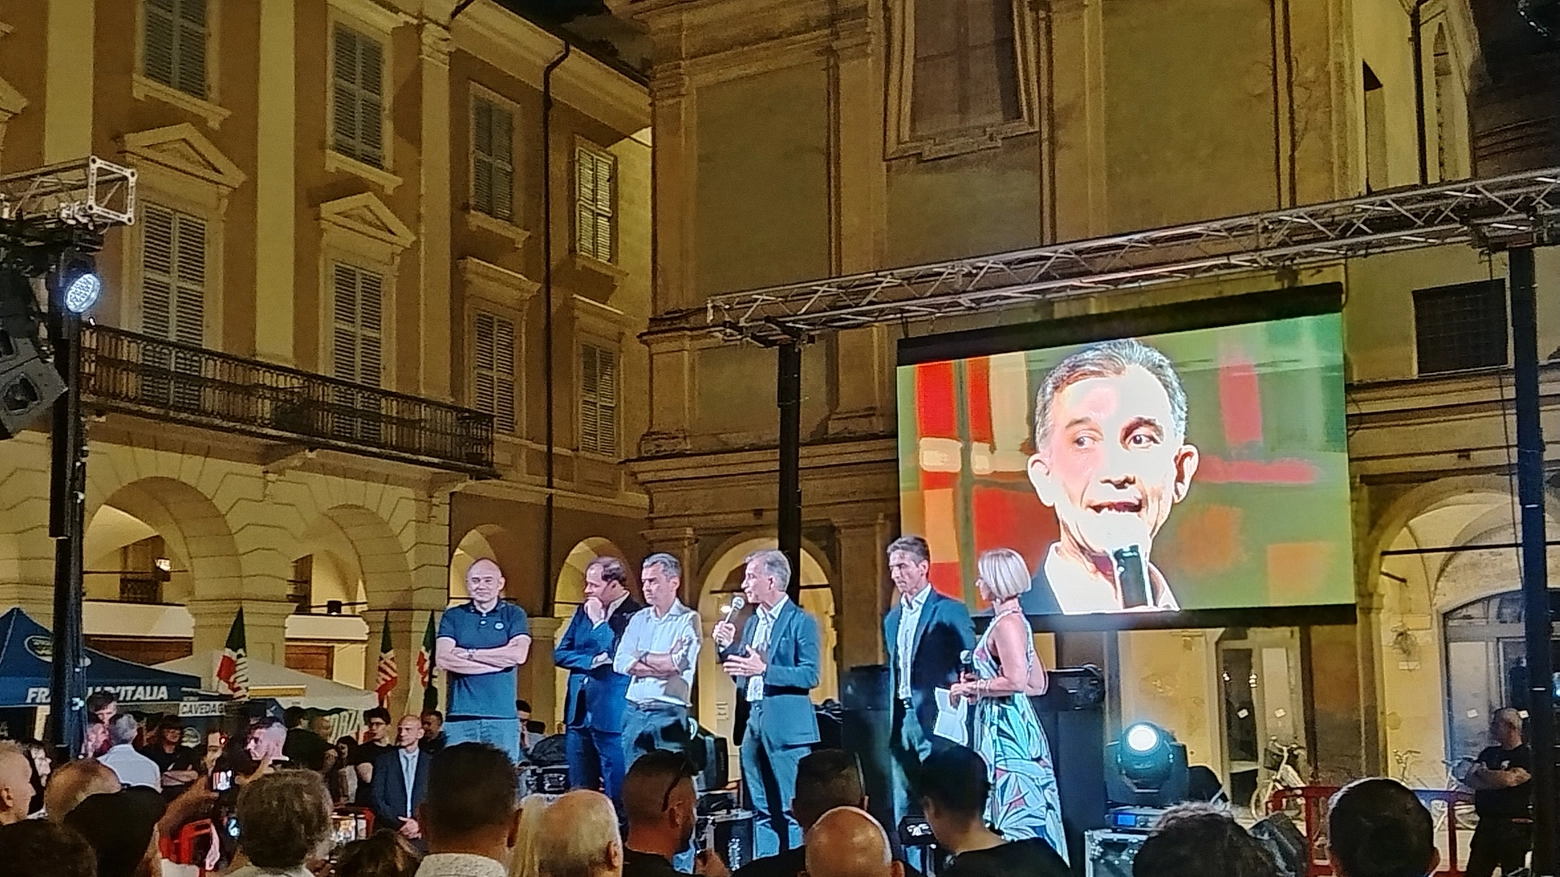 Il candidato Tarquini sul palco in piazza San Prospero